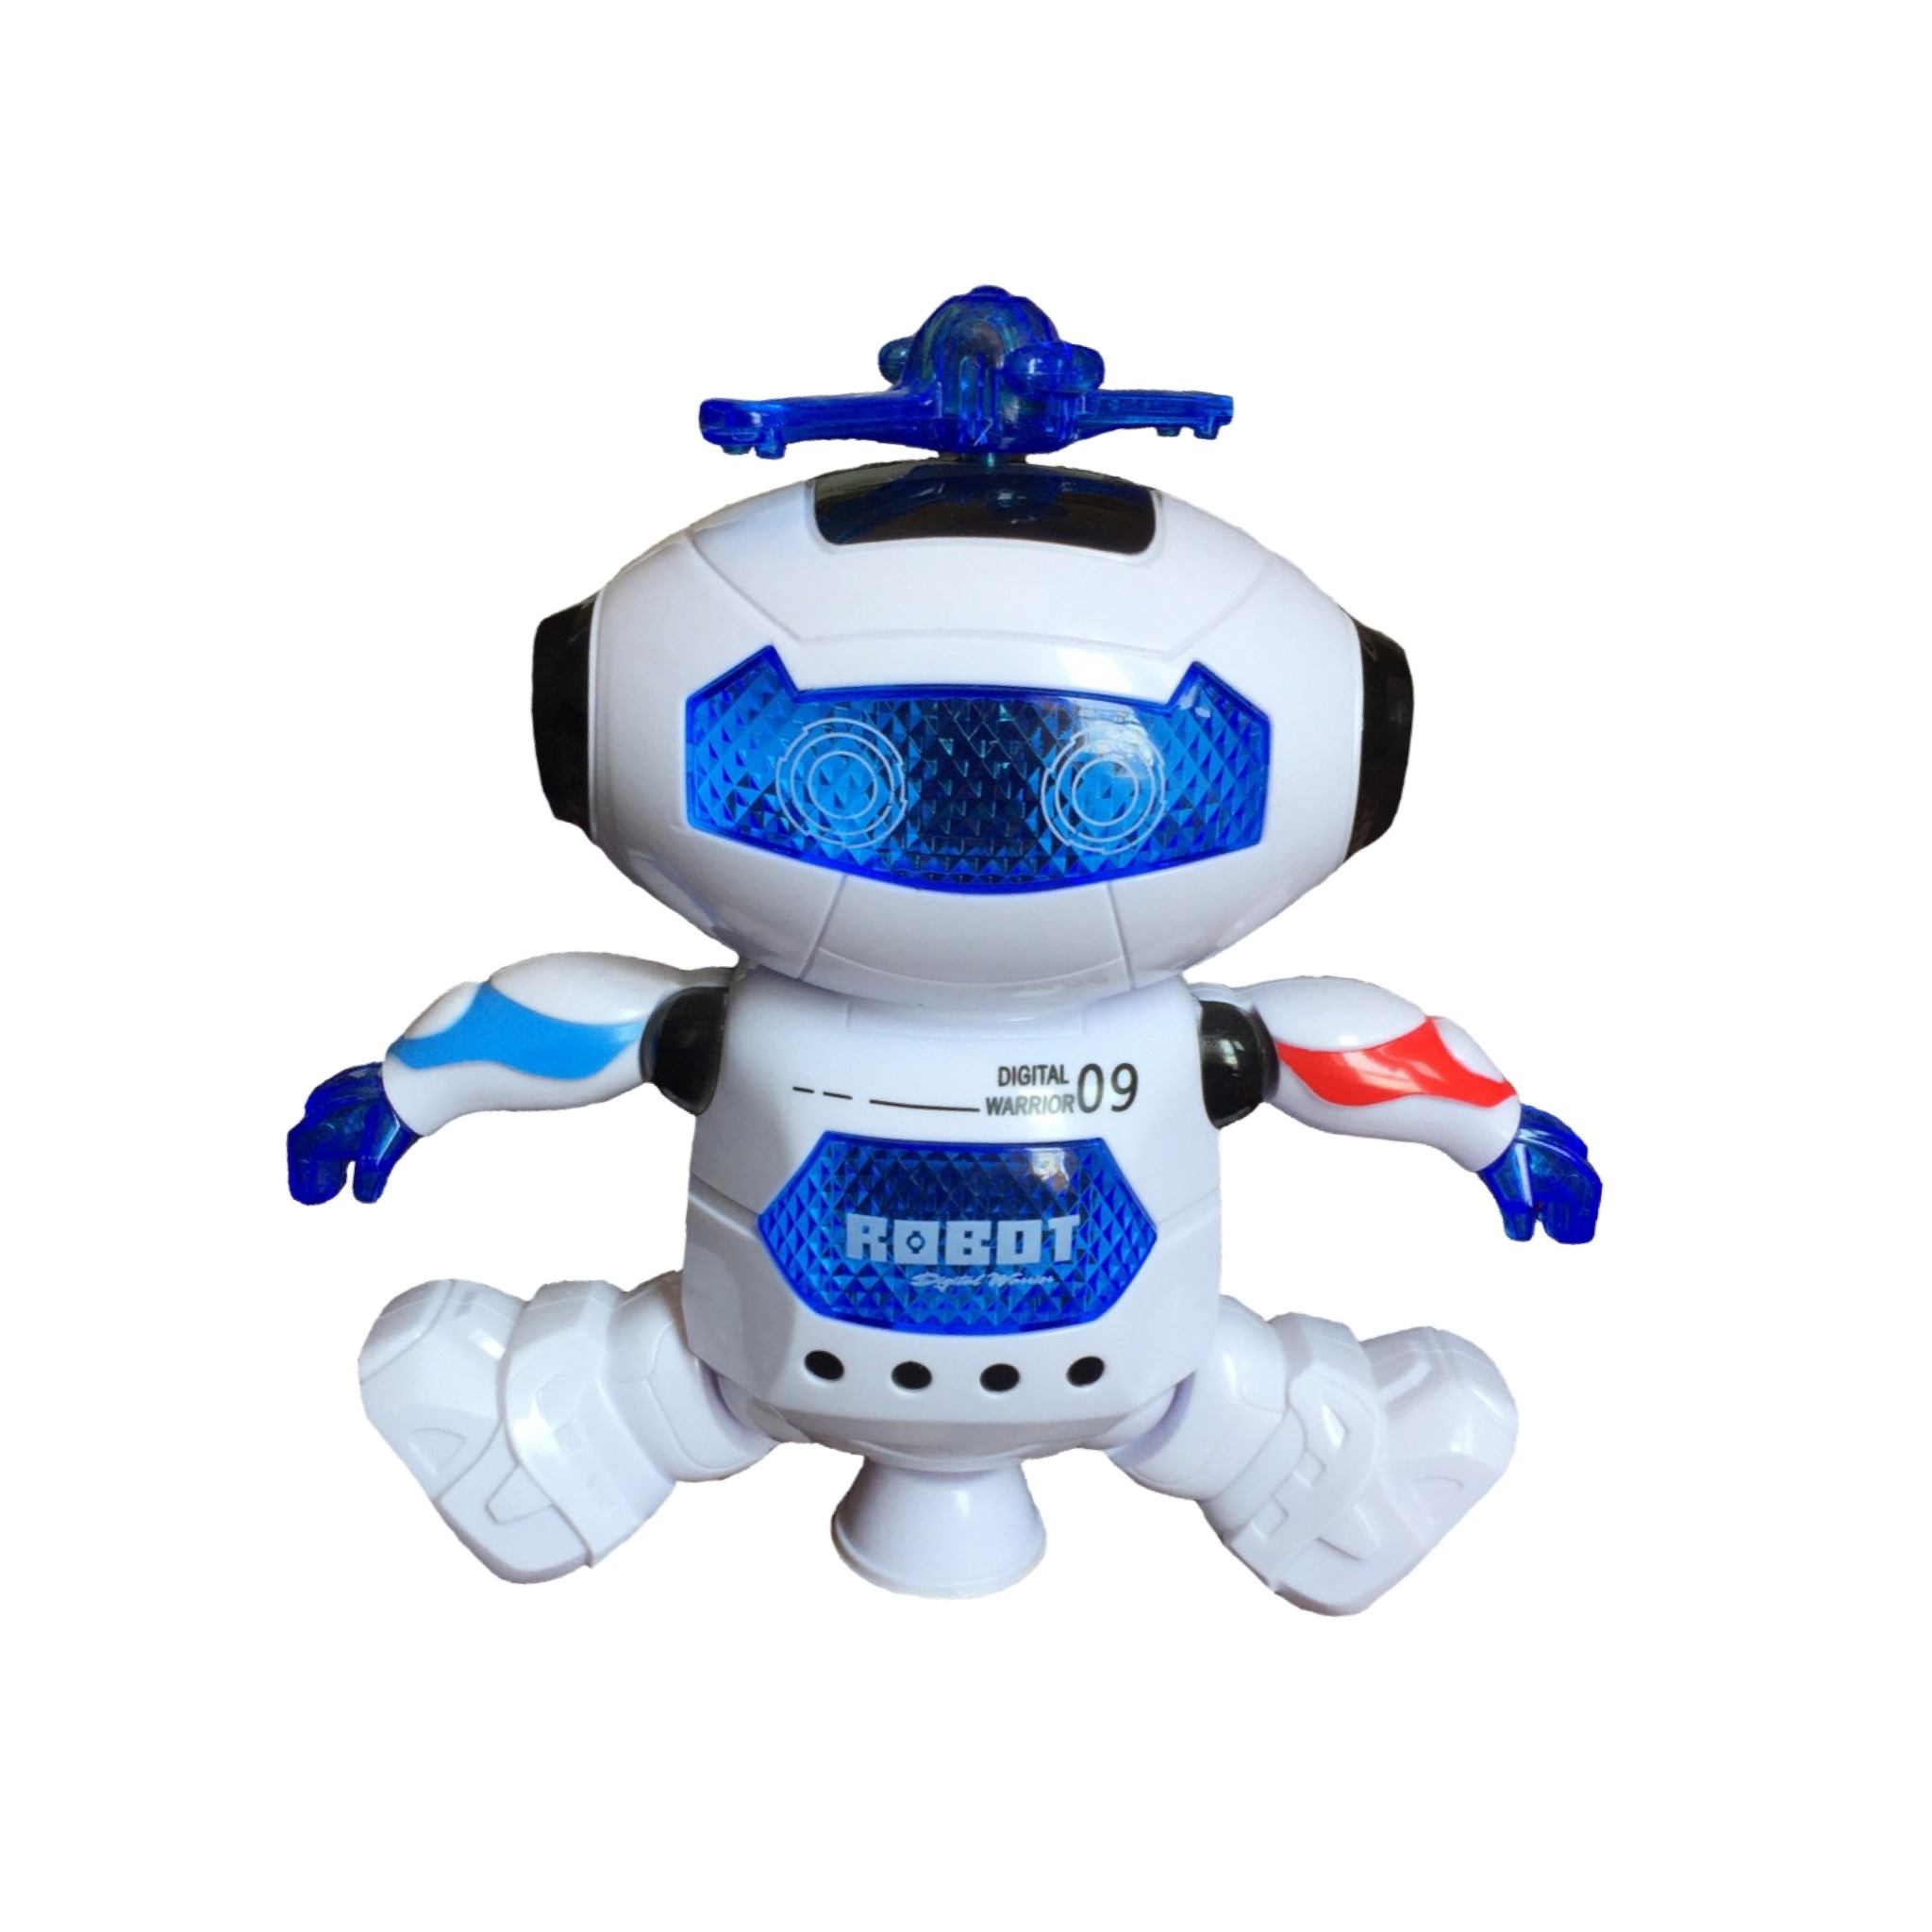 ربات اسباب ورزشكار مدل Dance Robot